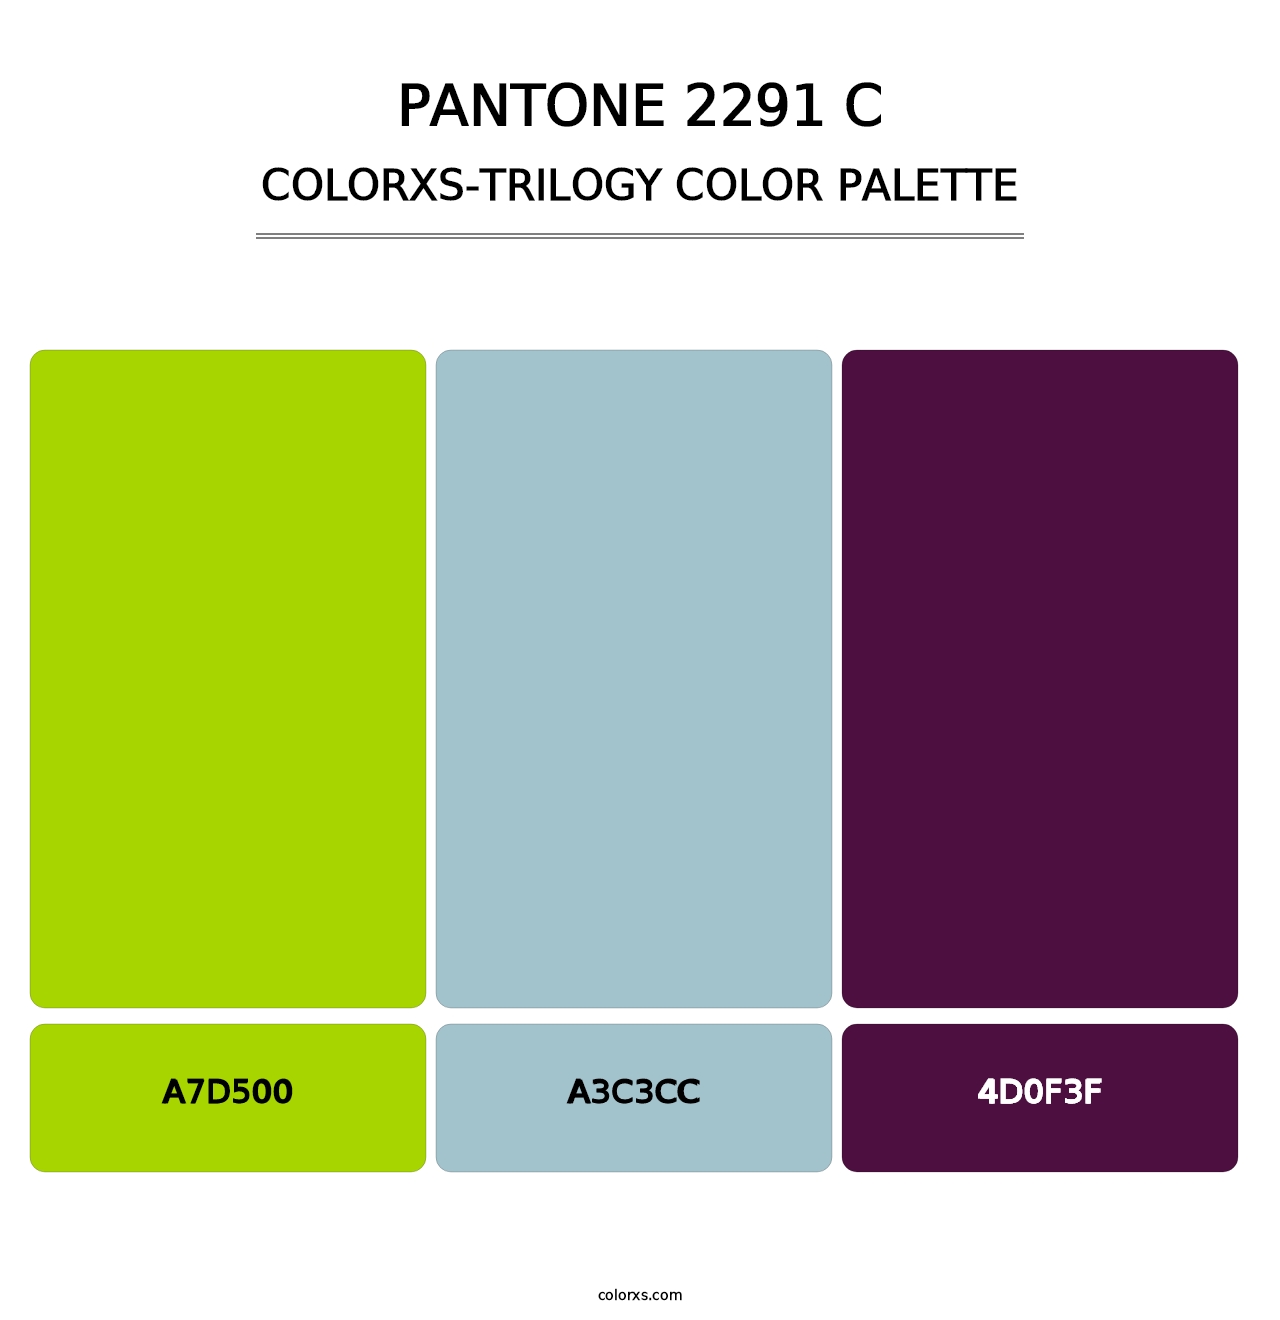 PANTONE 2291 C - Colorxs Trilogy Palette